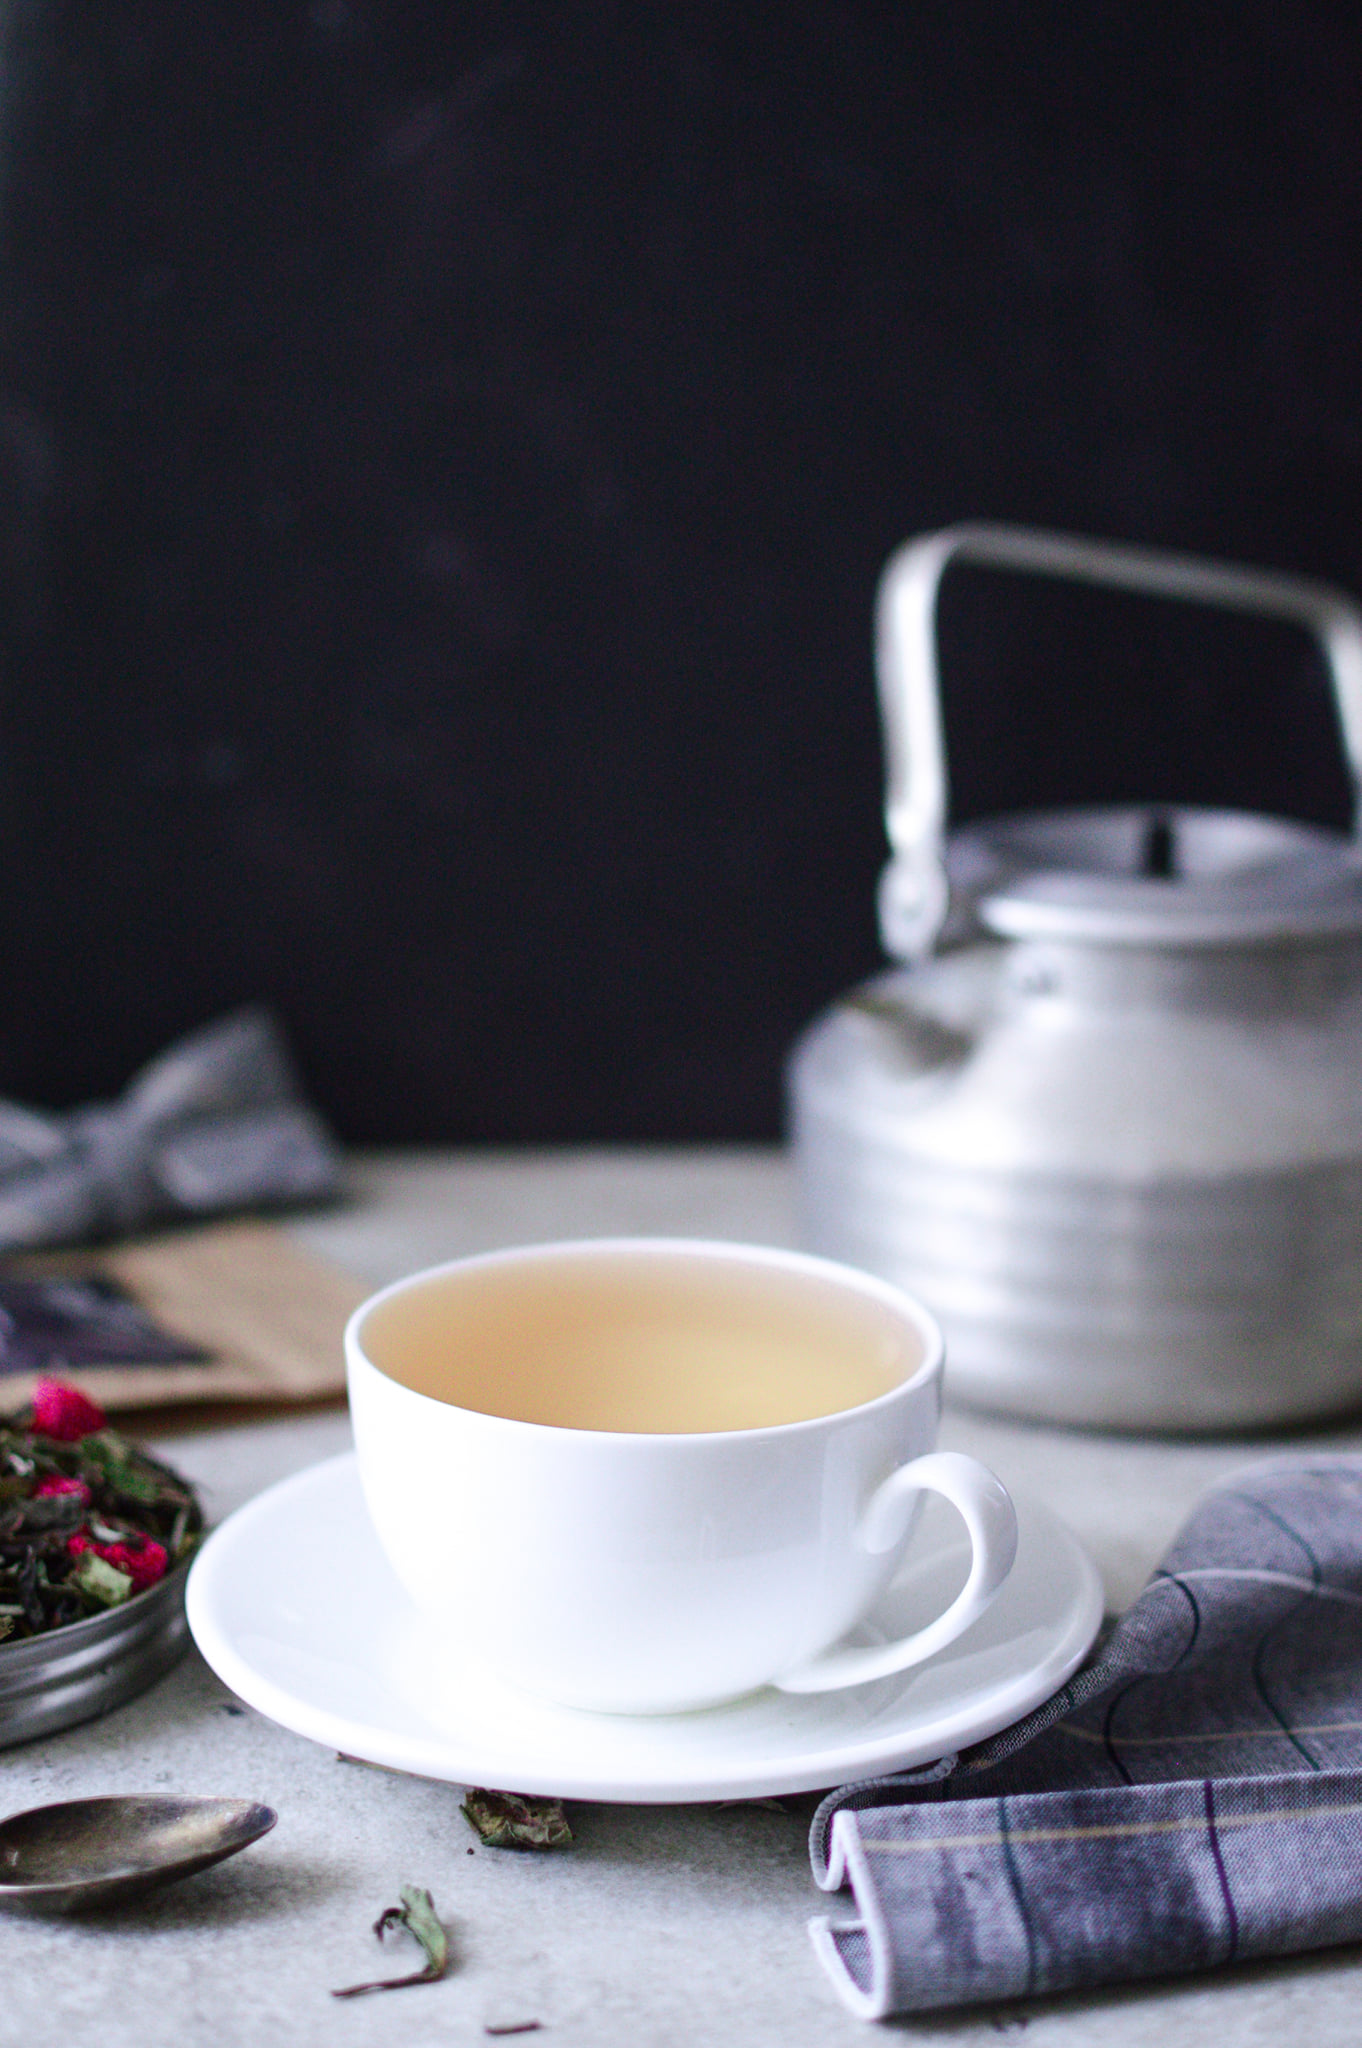 lew salonowy biała herbata z dodatkami herbata malinowa warsztat herbaty herbata łagodzi obyczaje najlepsza herbata